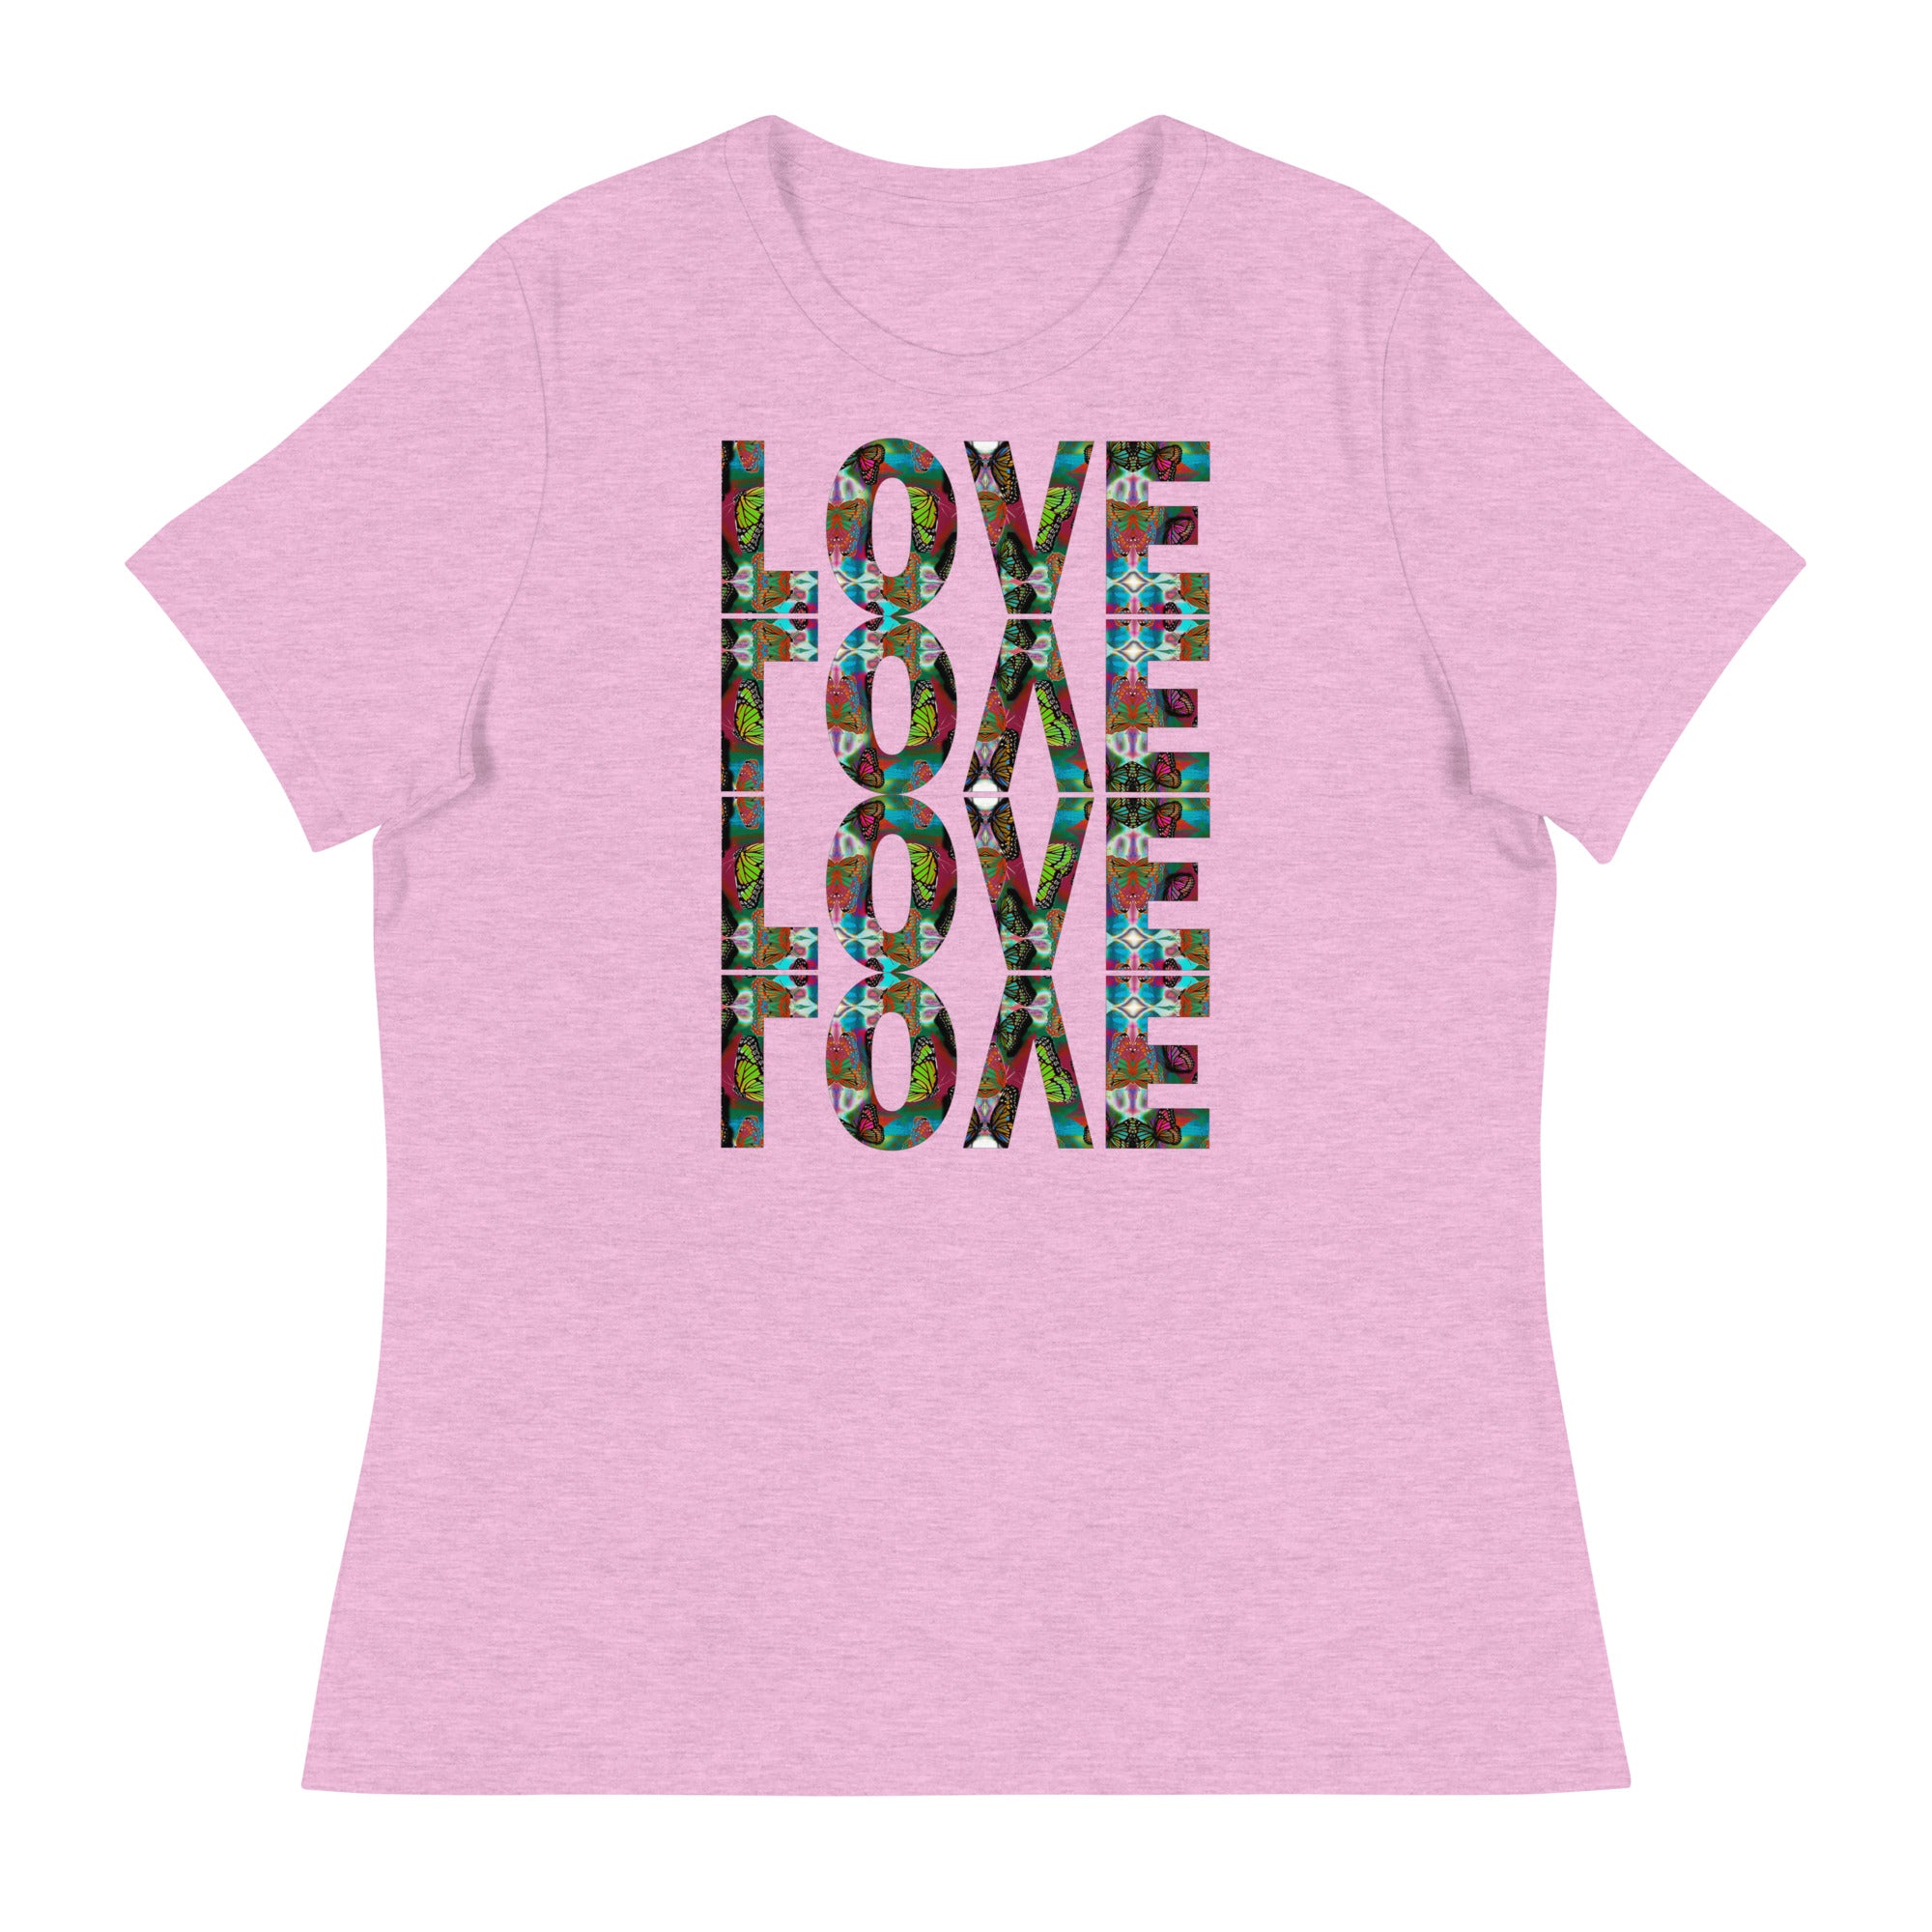 LOVE x 4 ~ Women's Graphic T-Shirt, Butterfly Word Art Short Sleeve Top